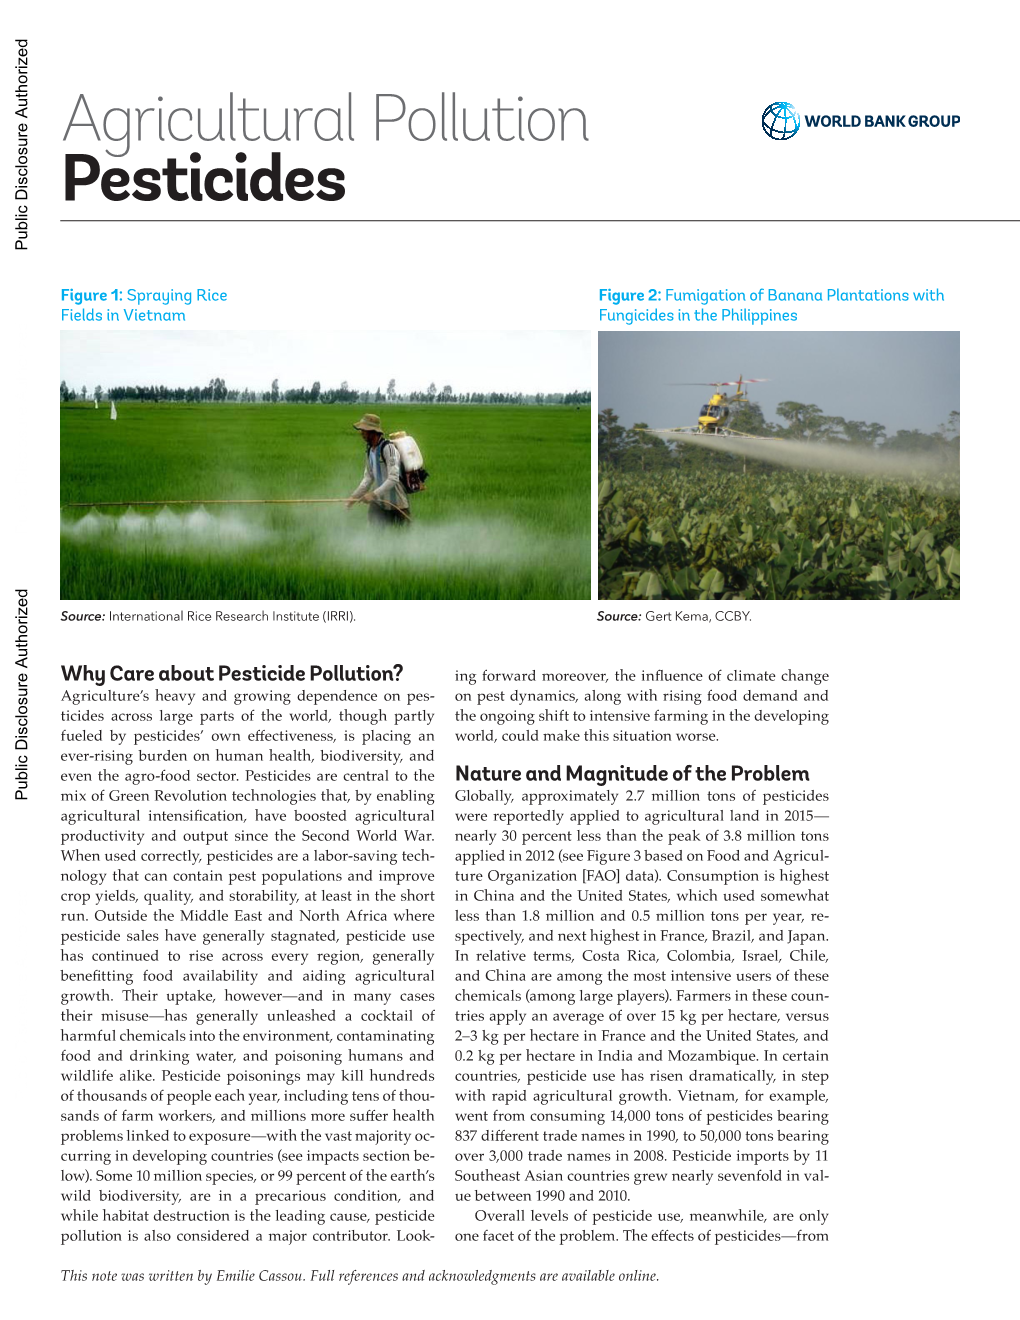 Agricultural Pollution Pesticides Public Disclosure Authorized